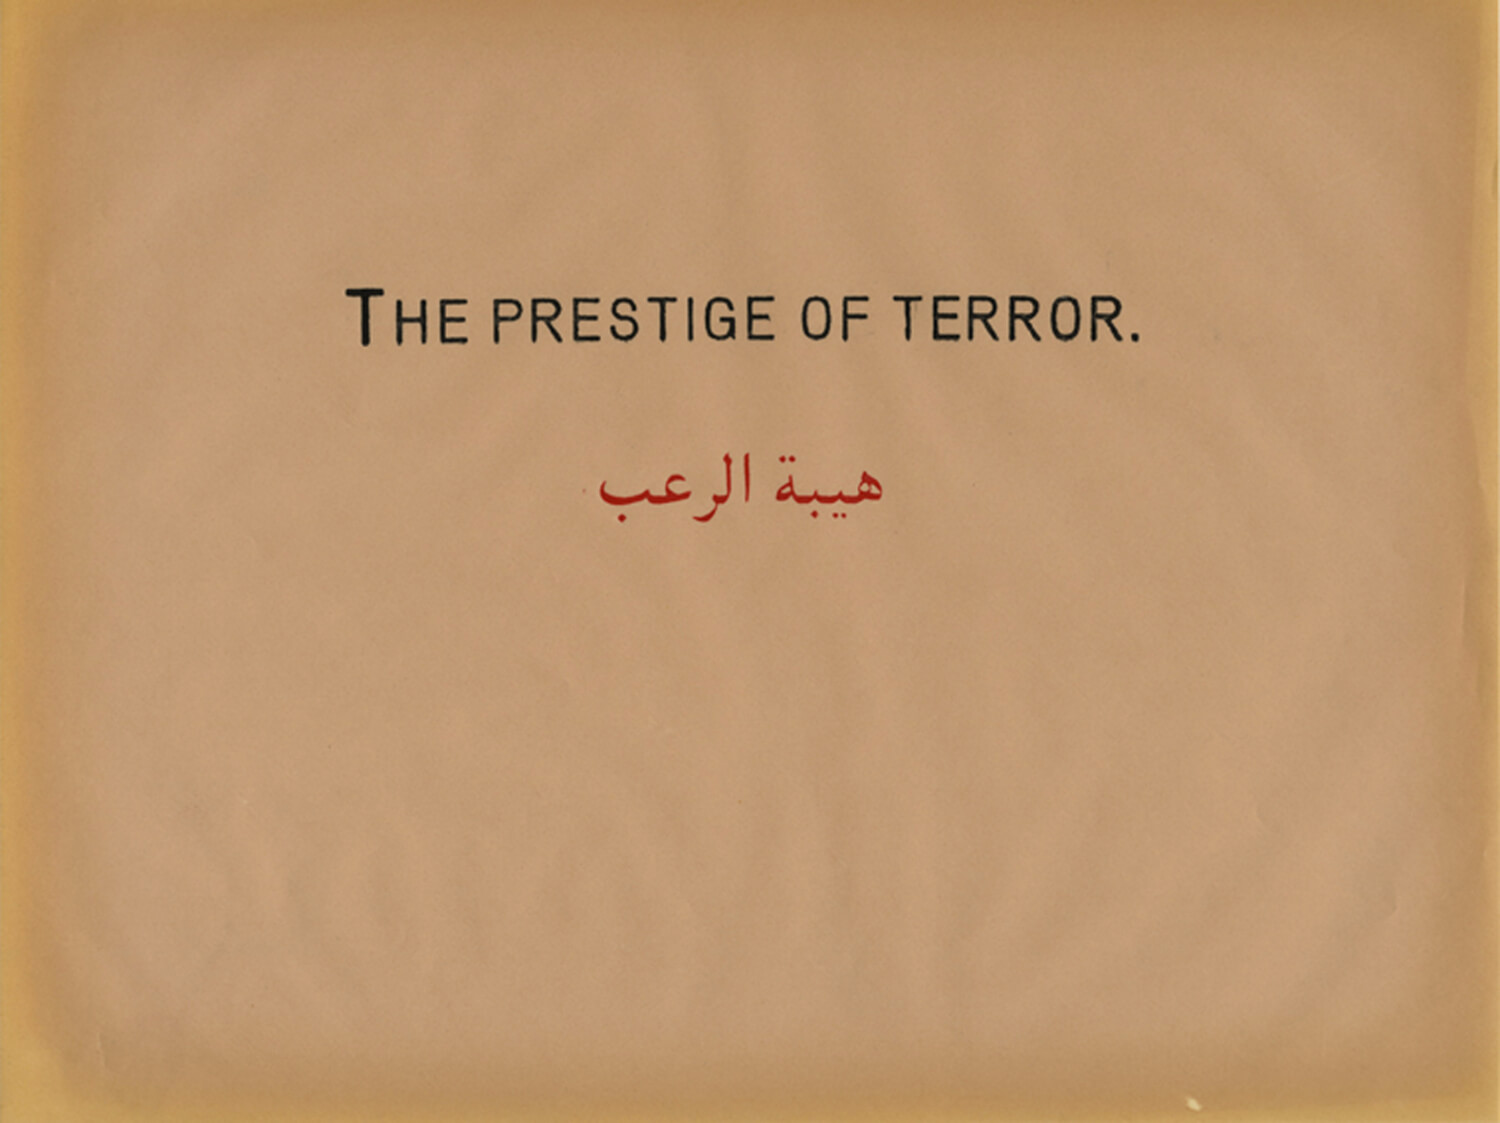  The Prestige of Terror, The Prestige of Terror, 2010, Work on paper, 22 x 28 cm 